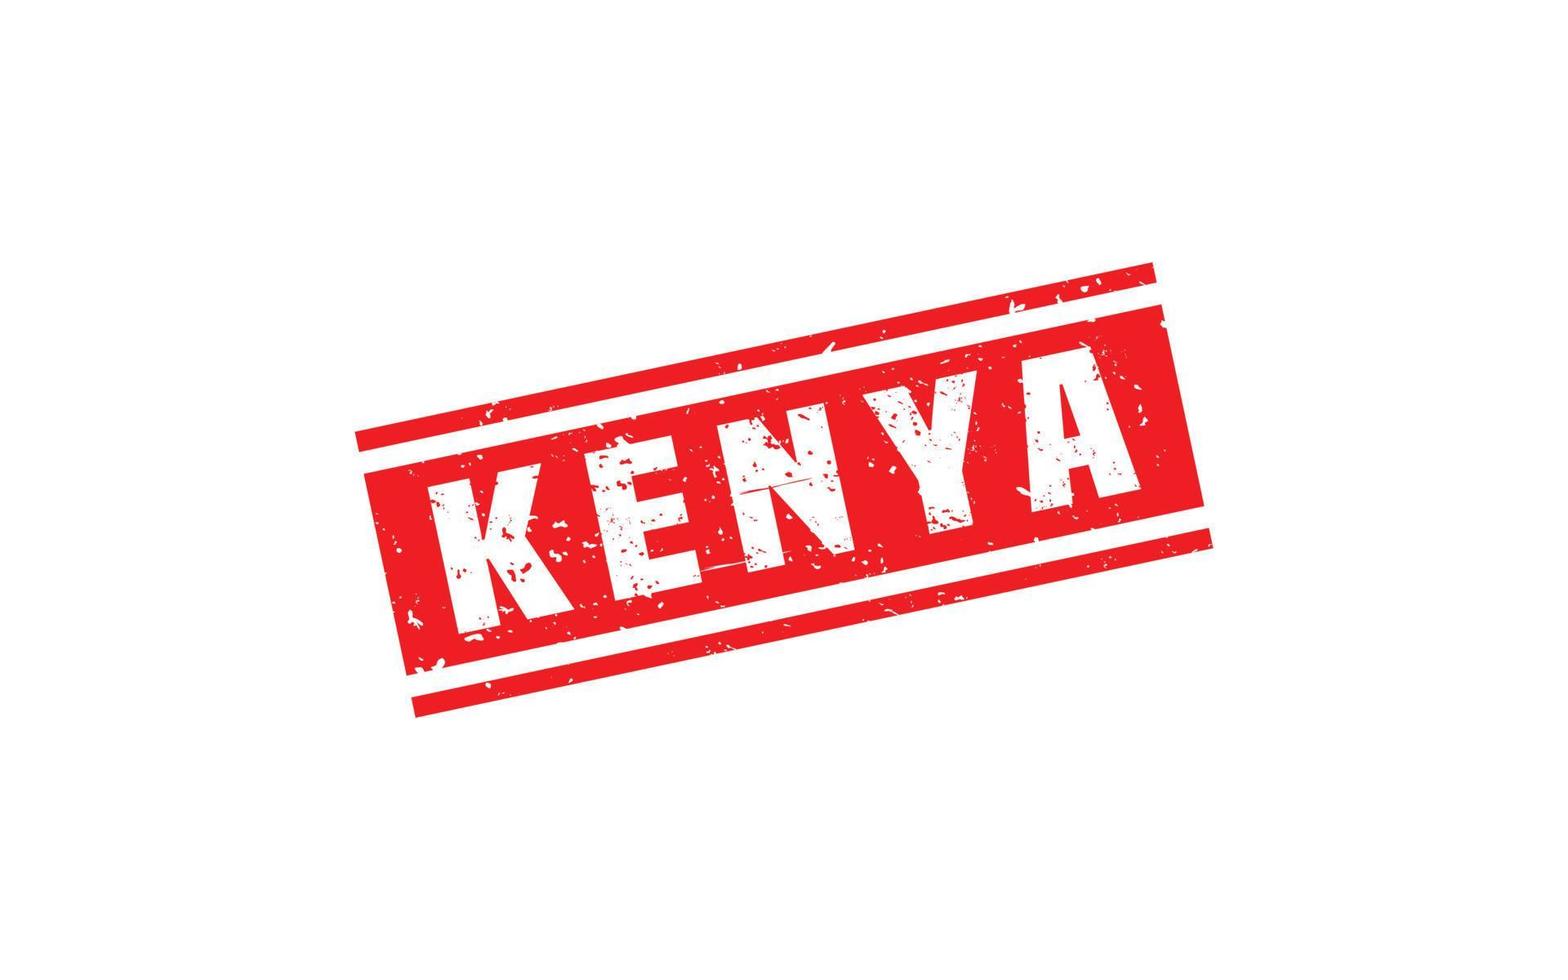 Kenia-Stempelgummi mit Grunge-Stil auf weißem Hintergrund vektor